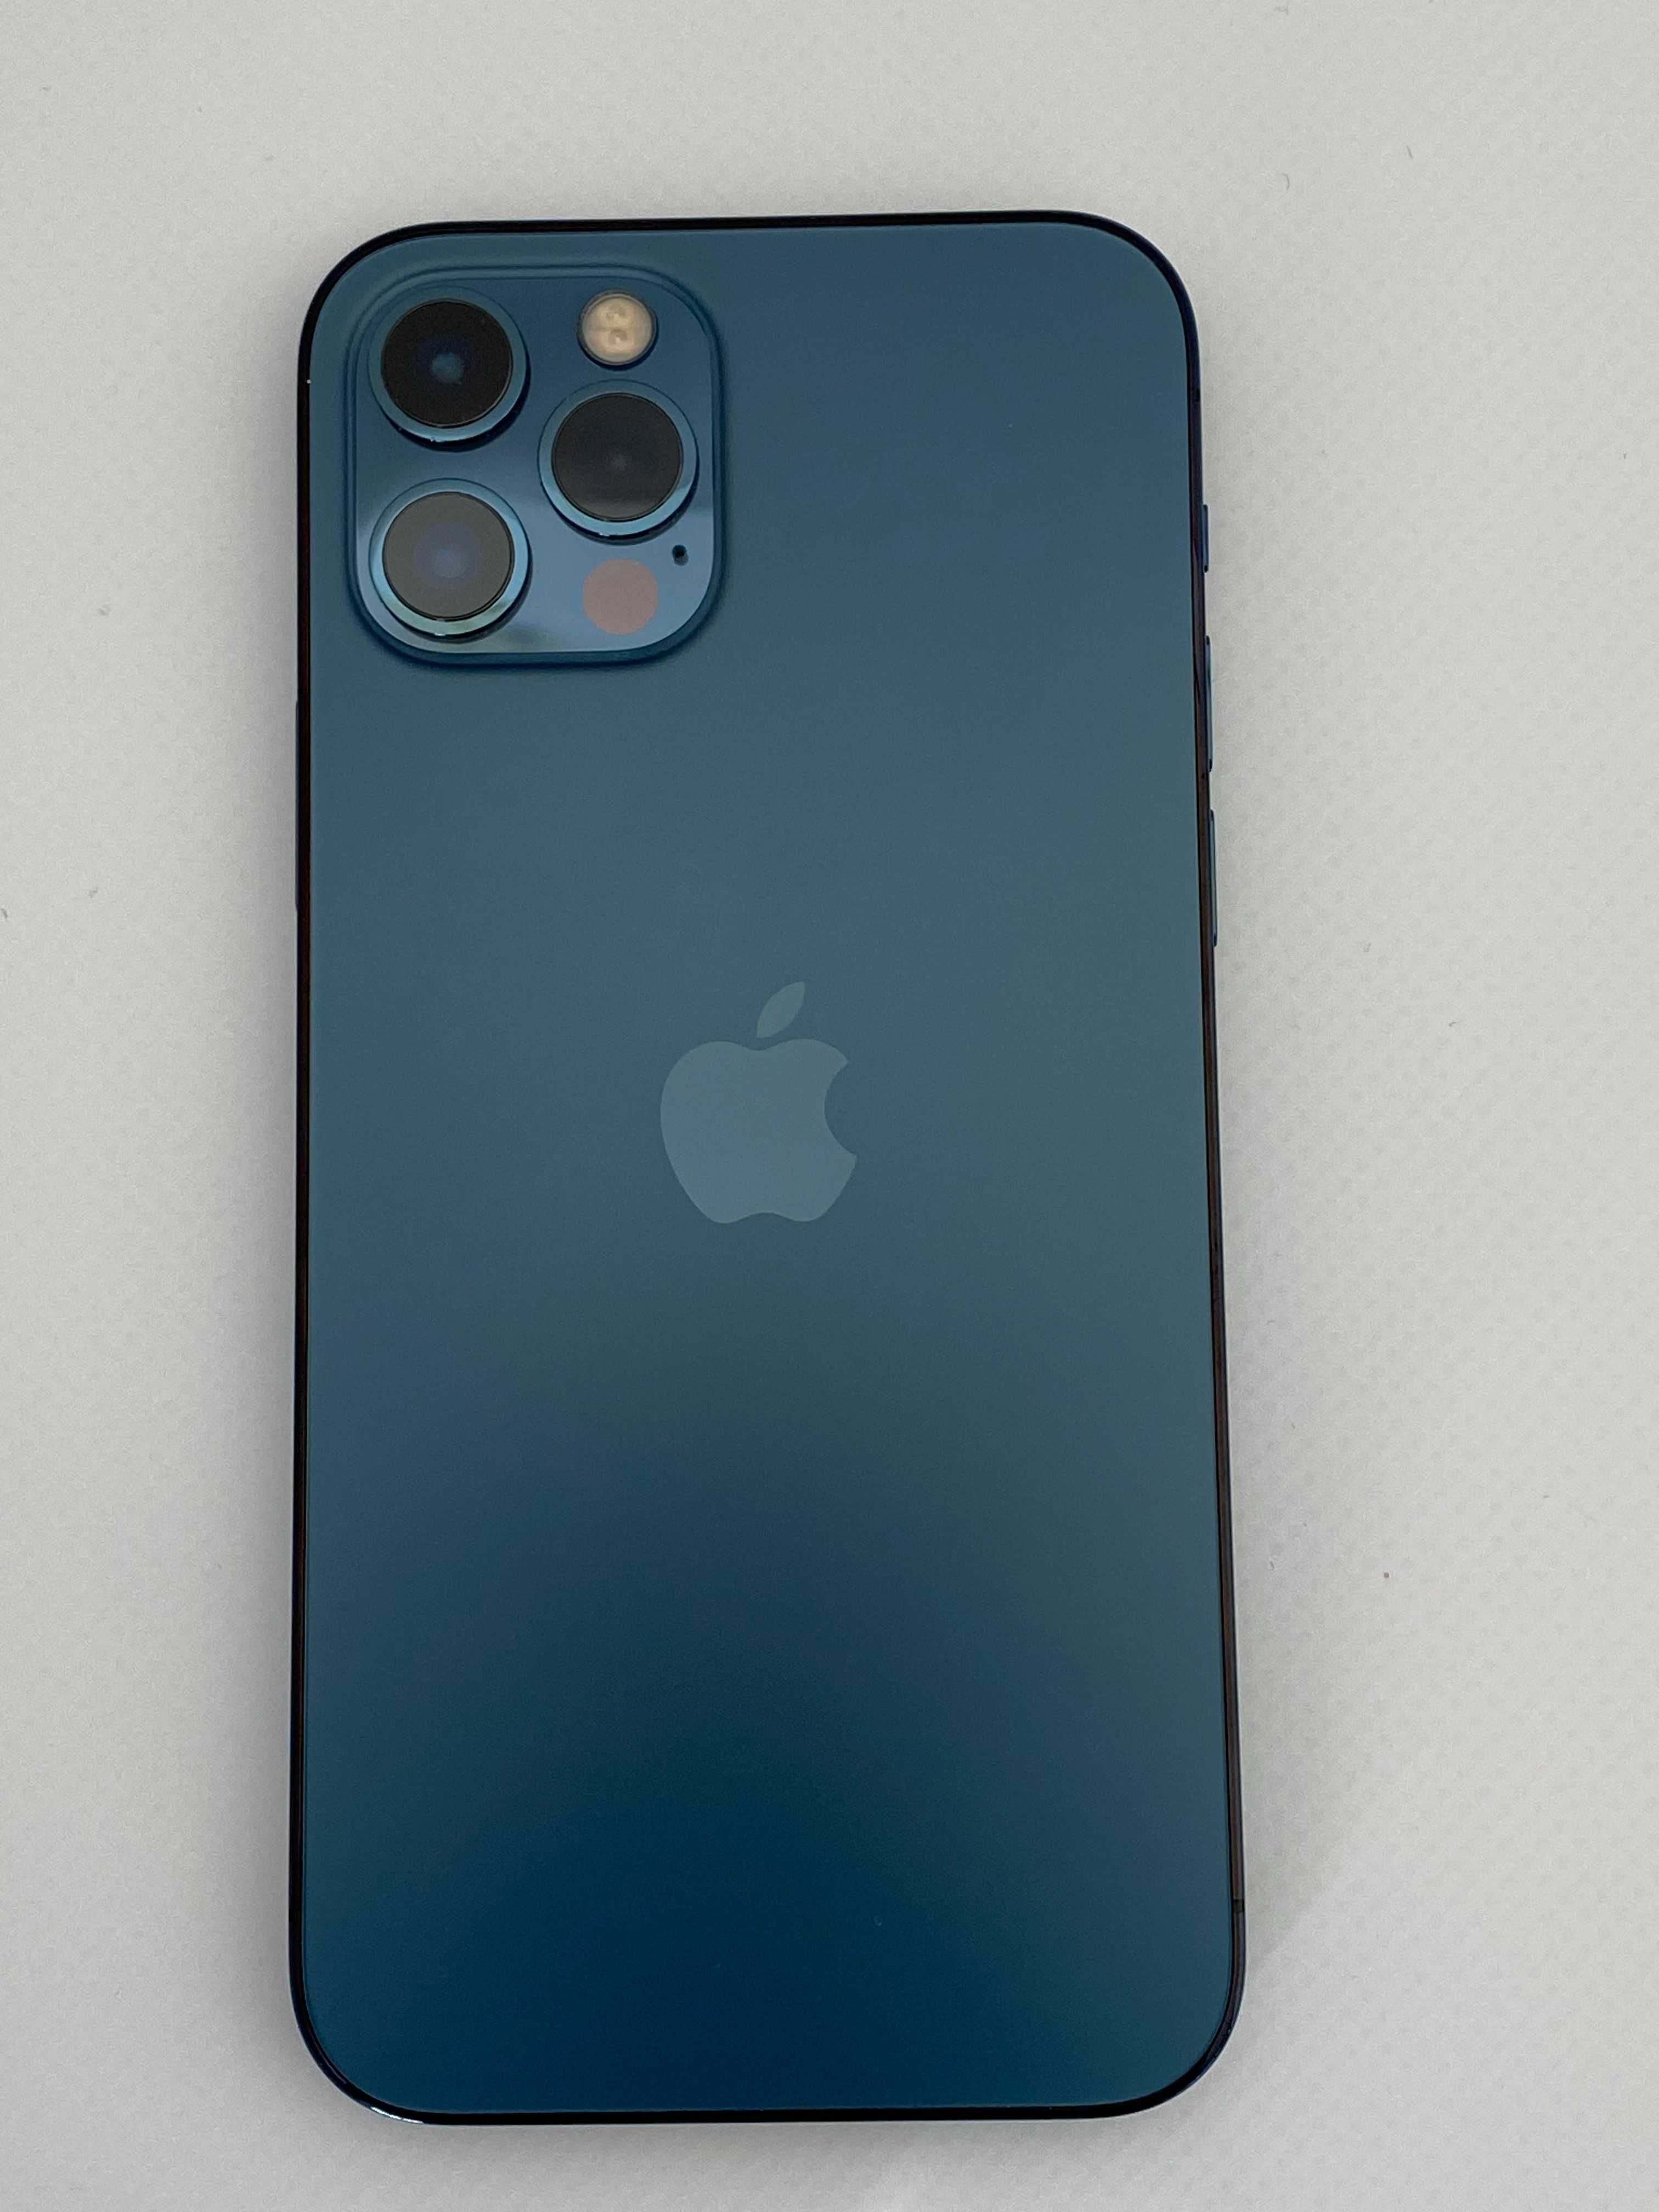 iPhone 12 Pro 256 Gb Pacific Blue Neverlock